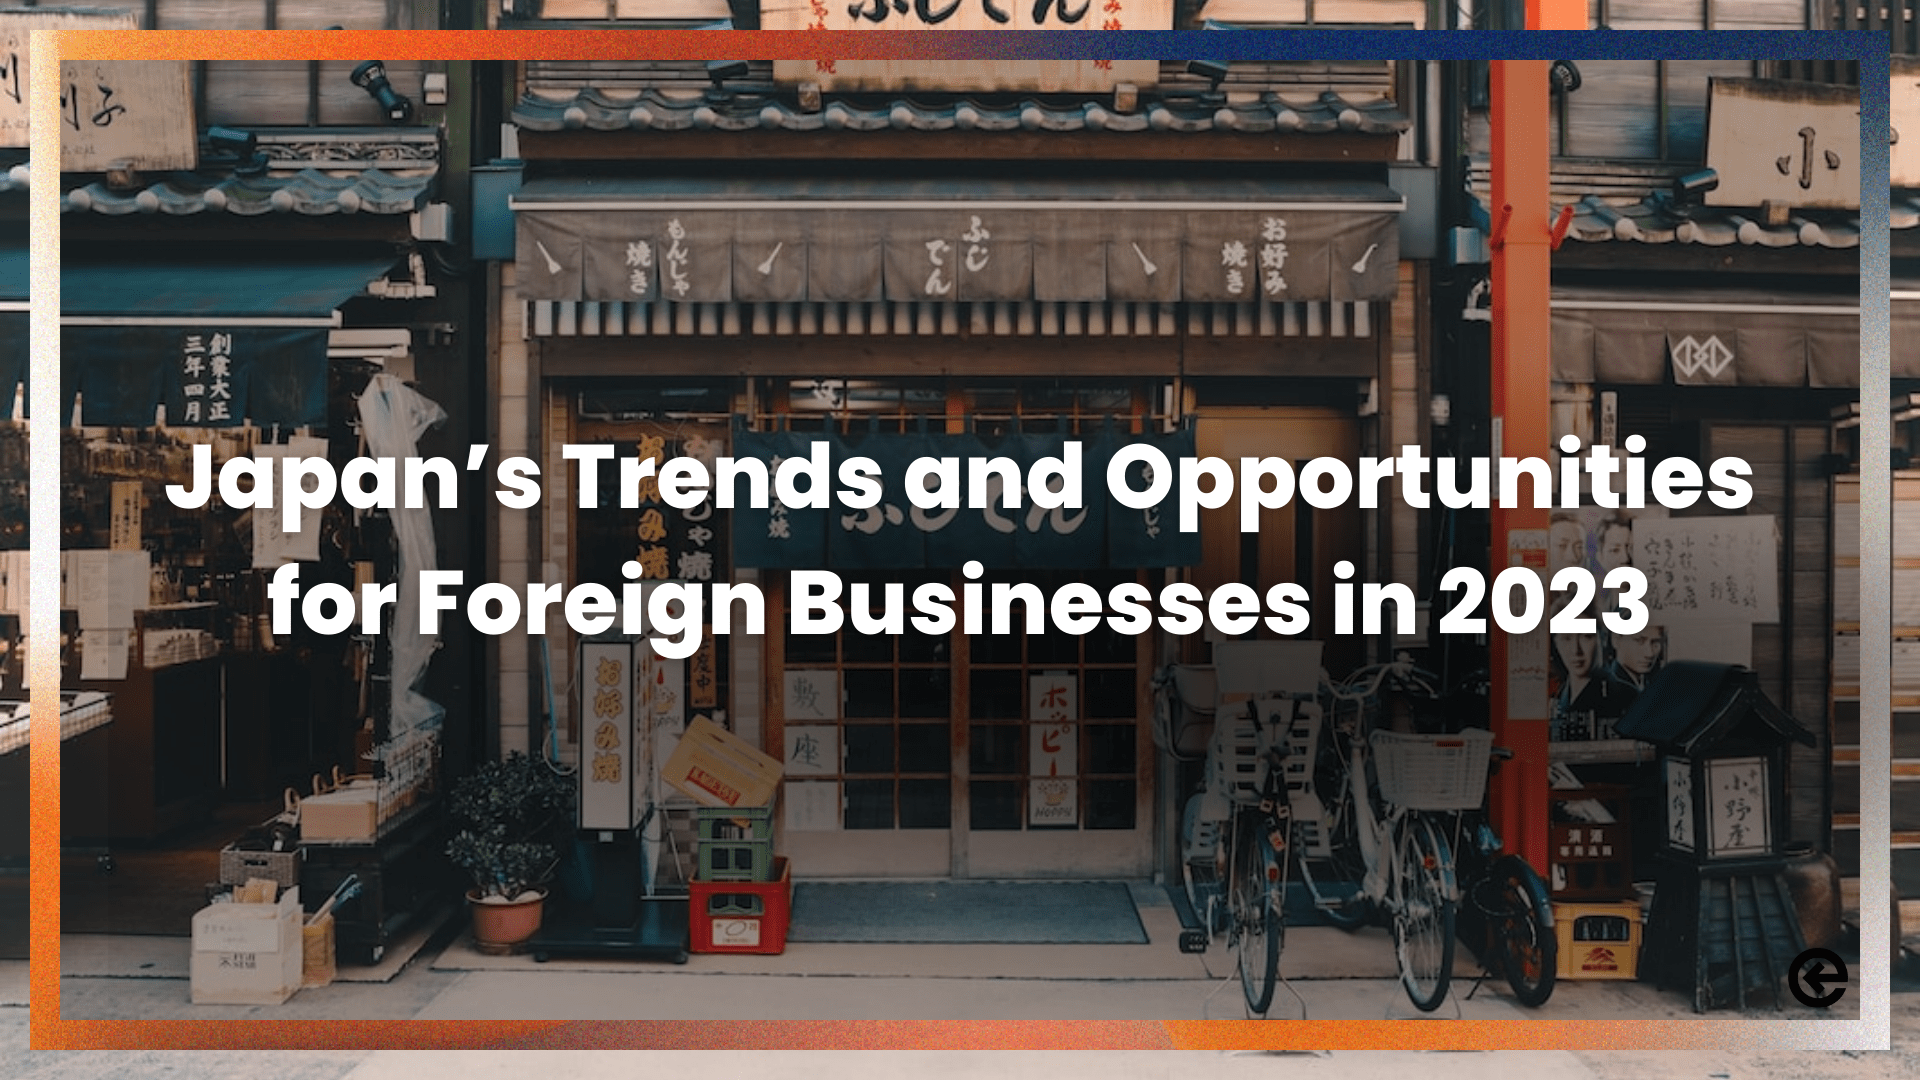 ¿Cuáles son las tendencias y oportunidades de Japón para las empresas extranjeras en 2023?